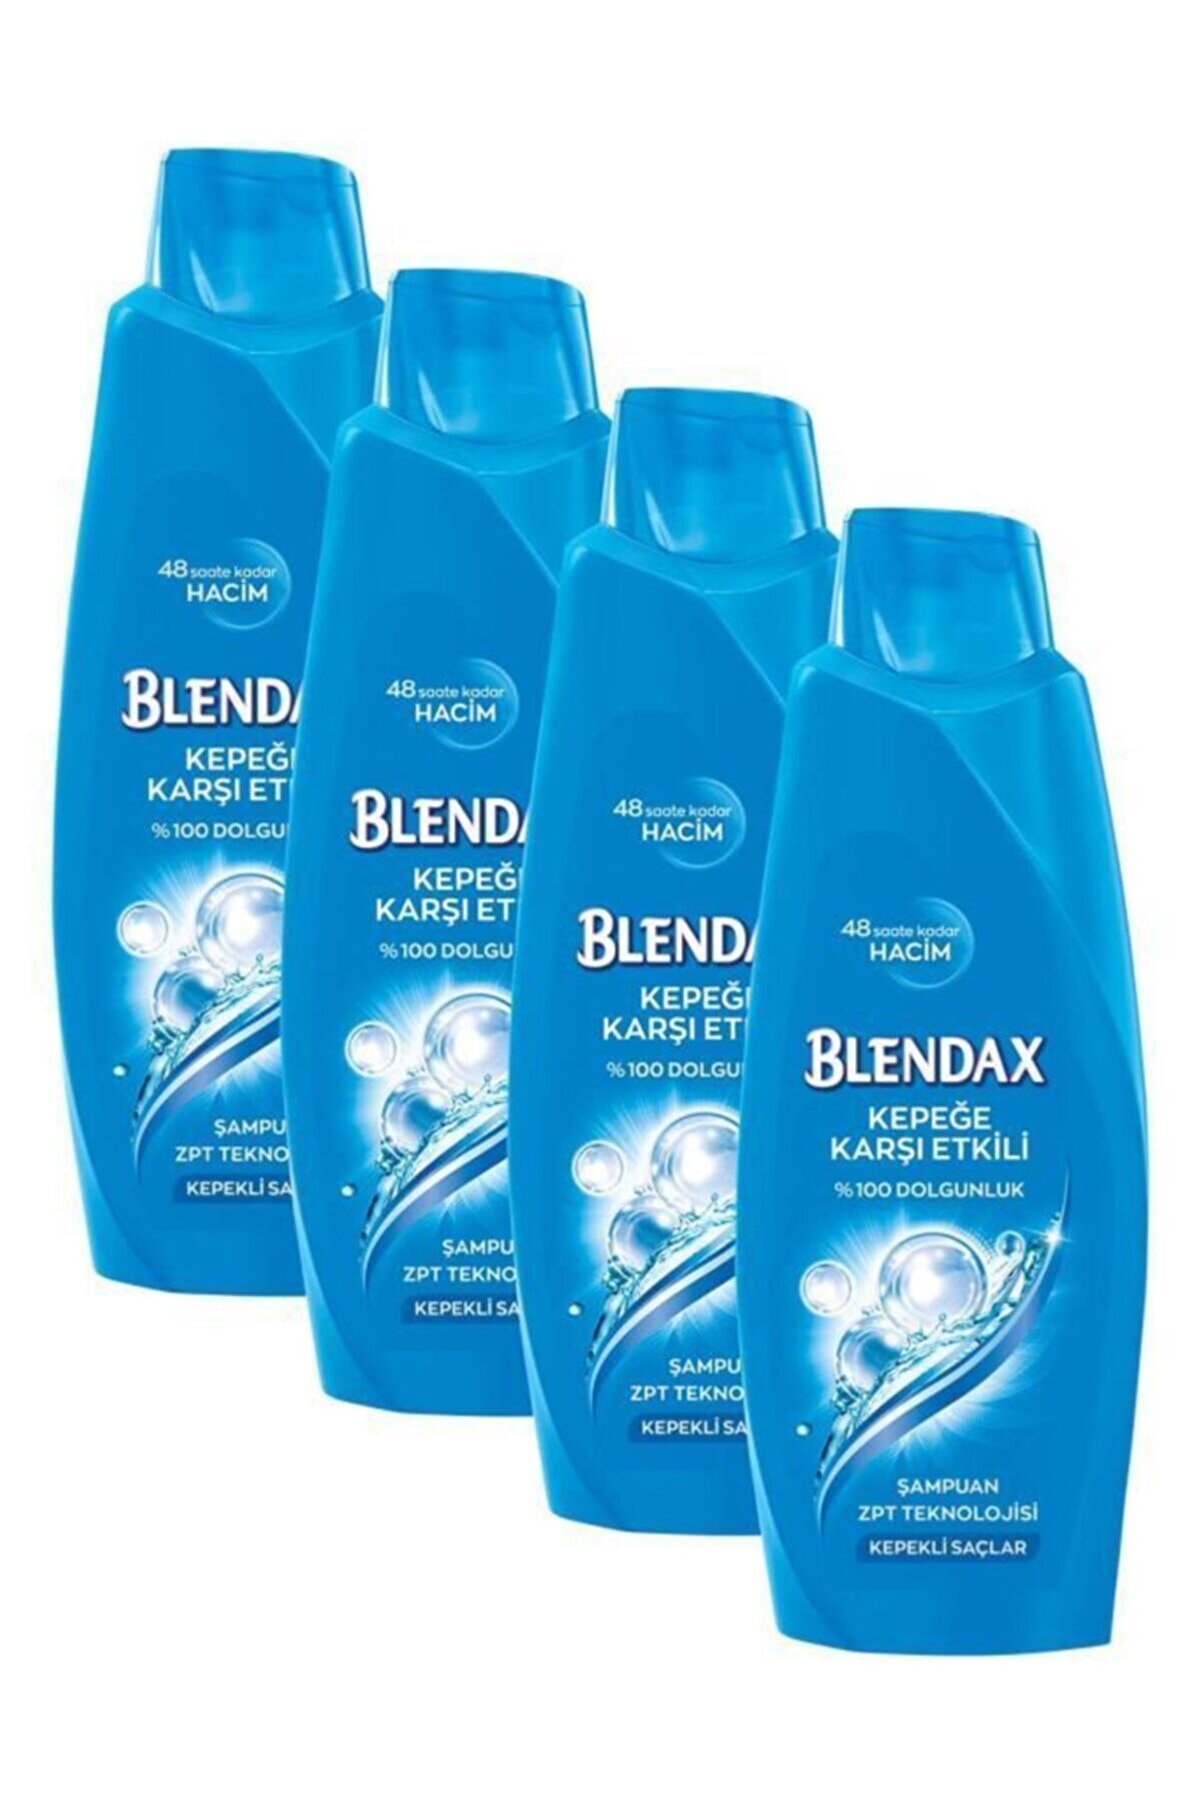 Blendax Kepeğe Karşı Etkili Şampuan 500 Ml X 4 Adet